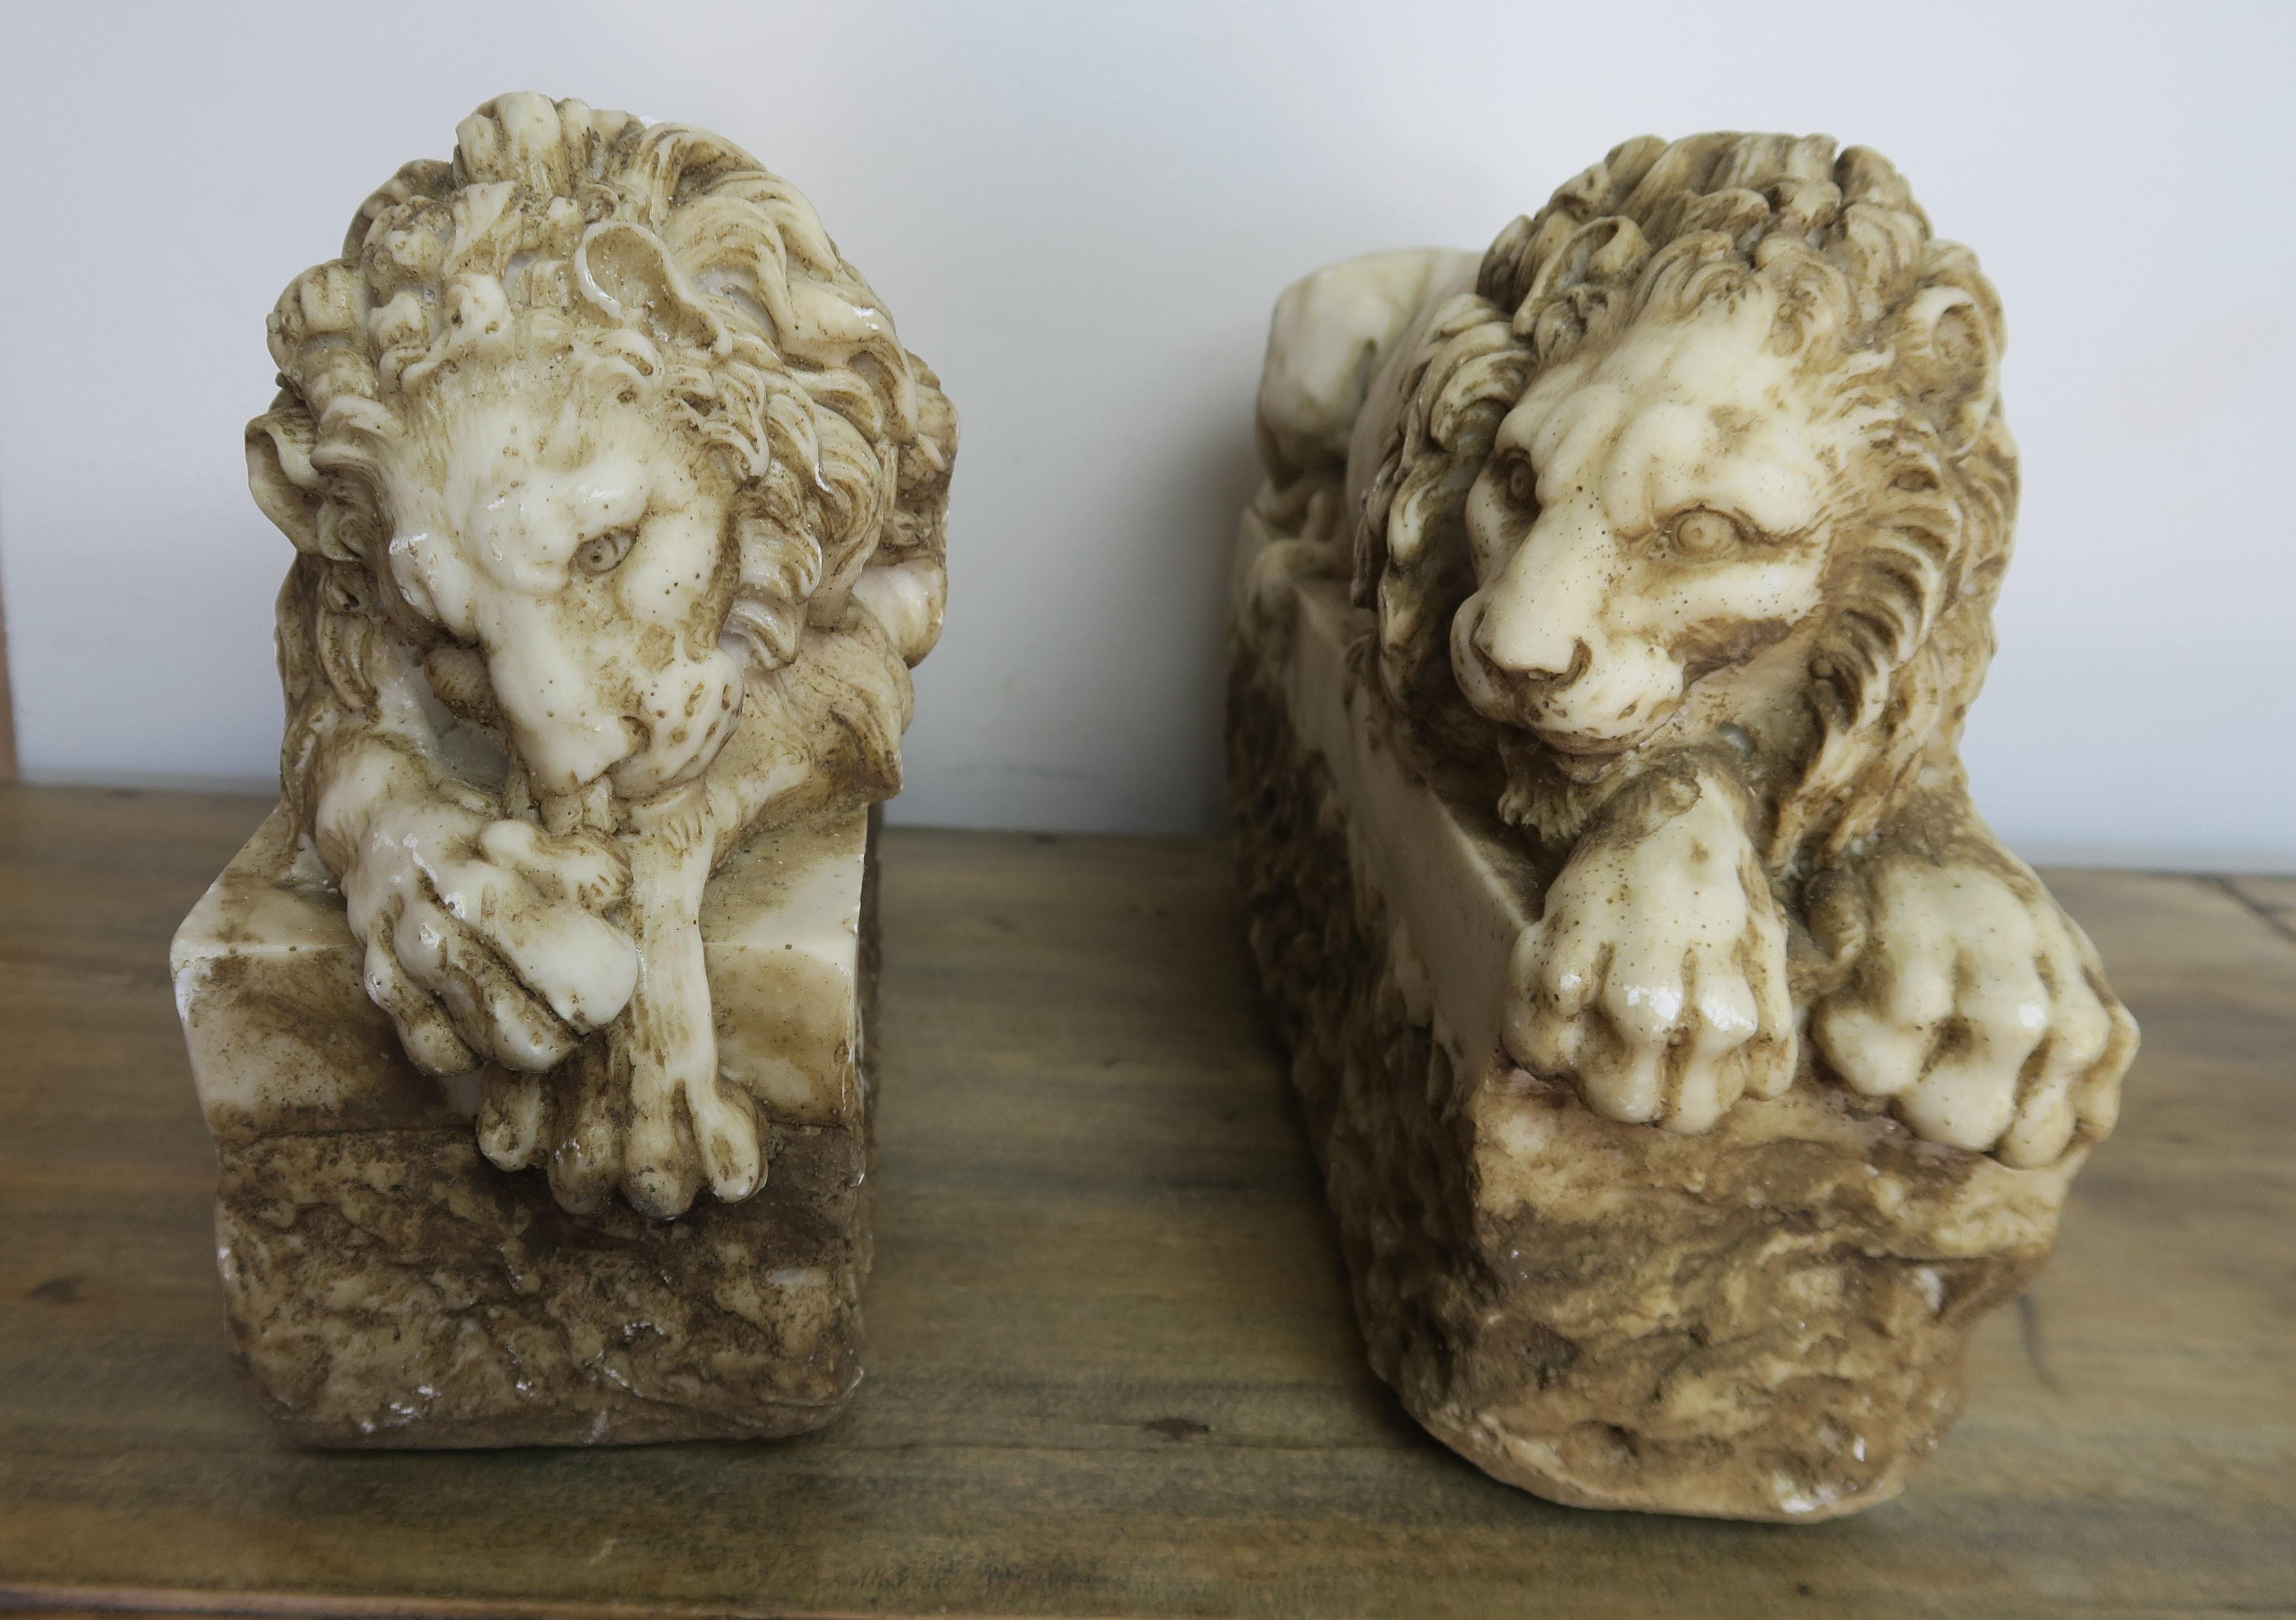 20th Century Pair of Carved Stone Replica Lions originally by Antonio Canova